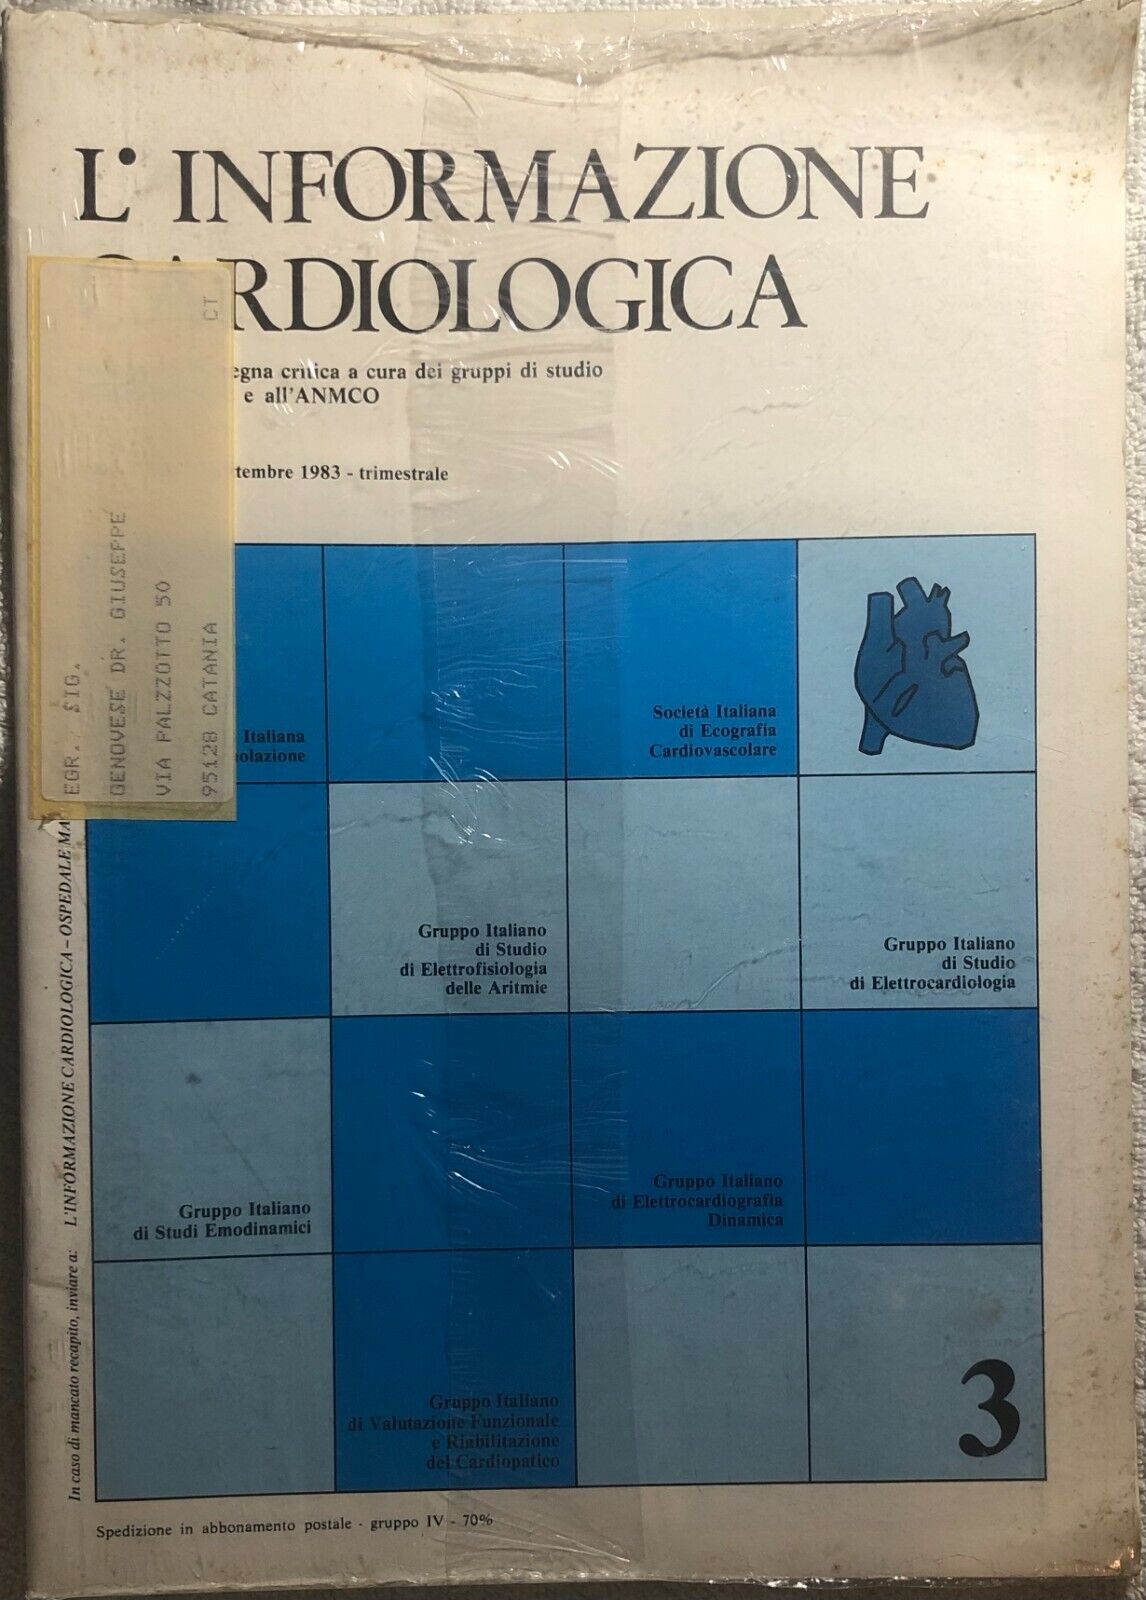 L'informazione cardiologica 3 di Aa.vv.,  1983,  Anmco